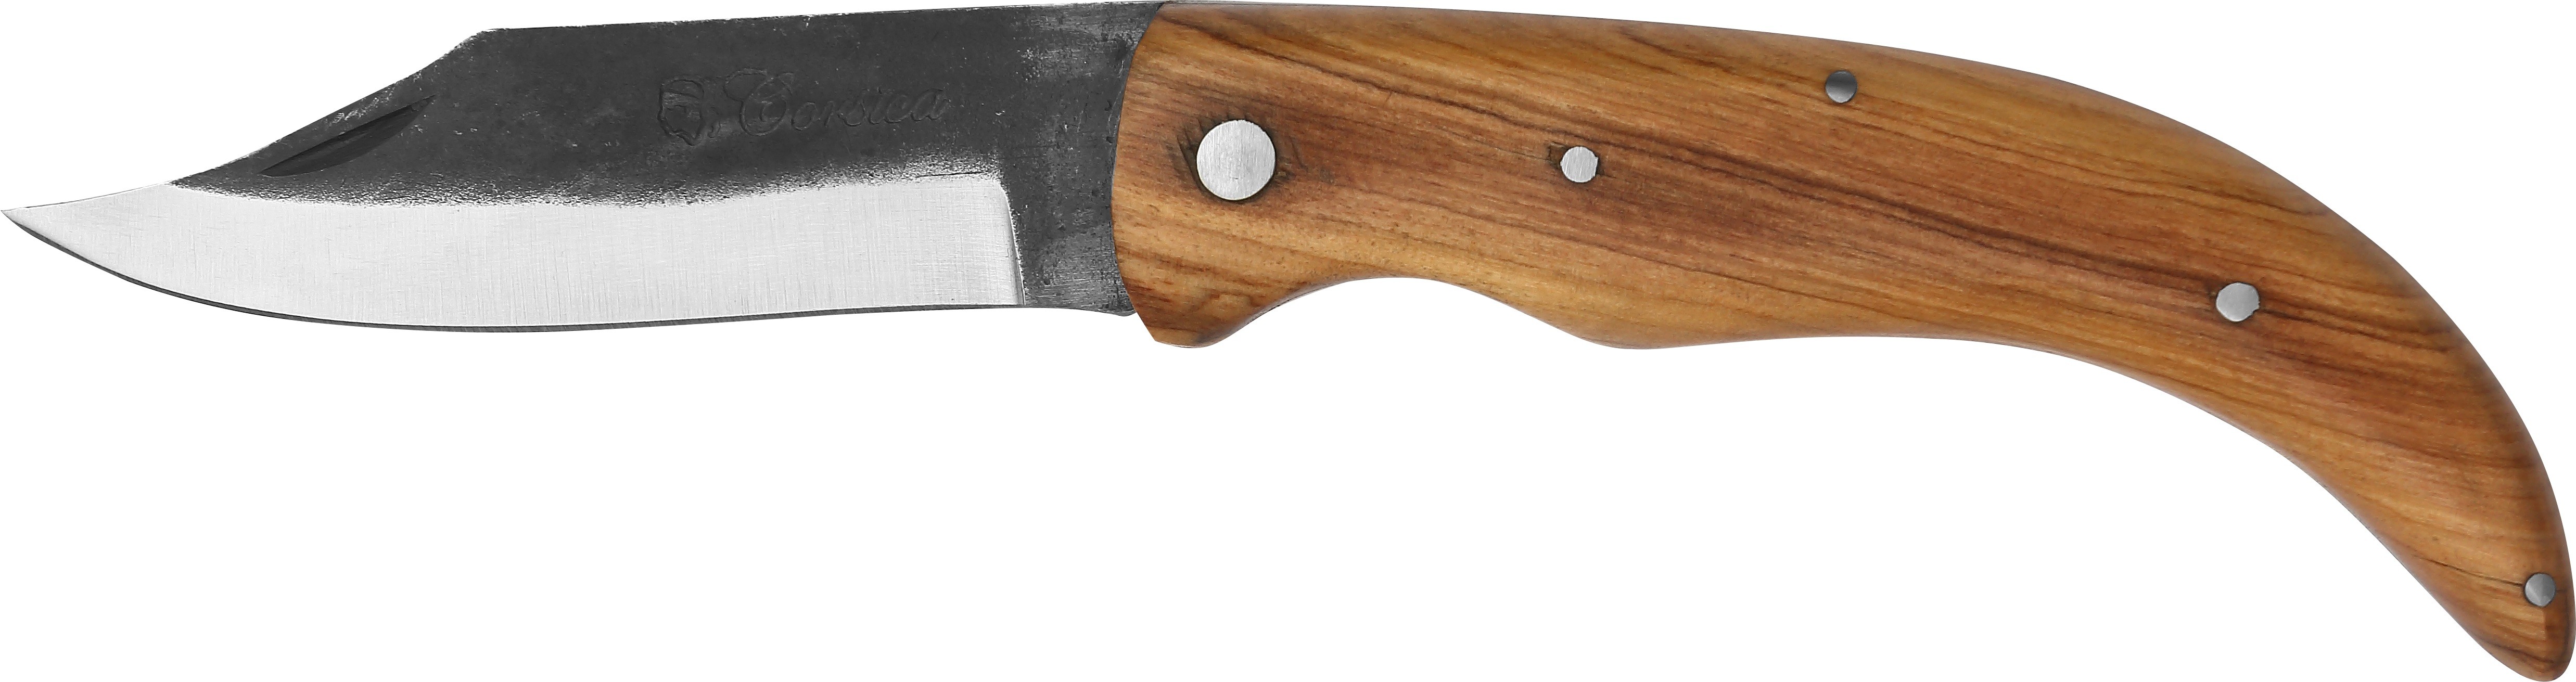 C - Couteau Pittuda brute 12 cm - teck